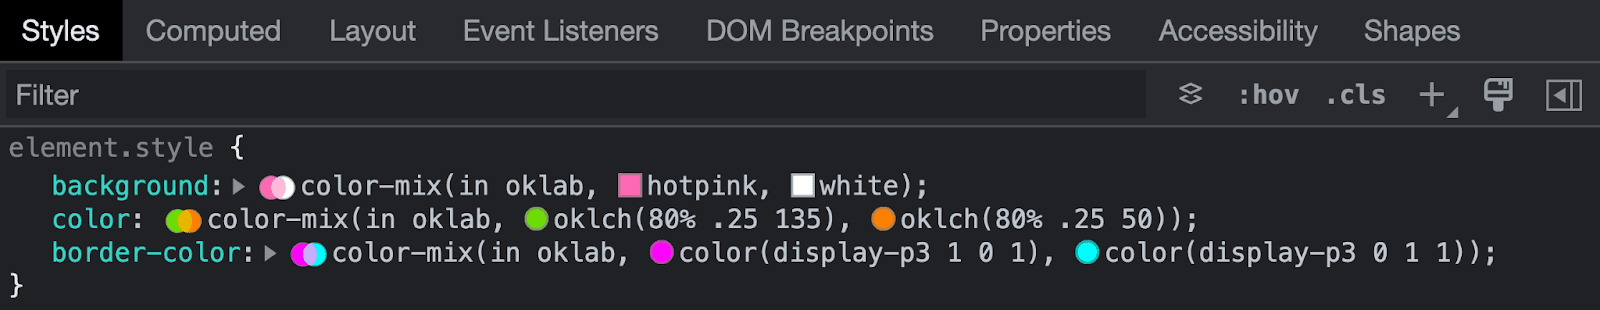 צילום מסך של כלי הפיתוח ל-Chrome שבודקים את התחביר של מיקס צבעים.